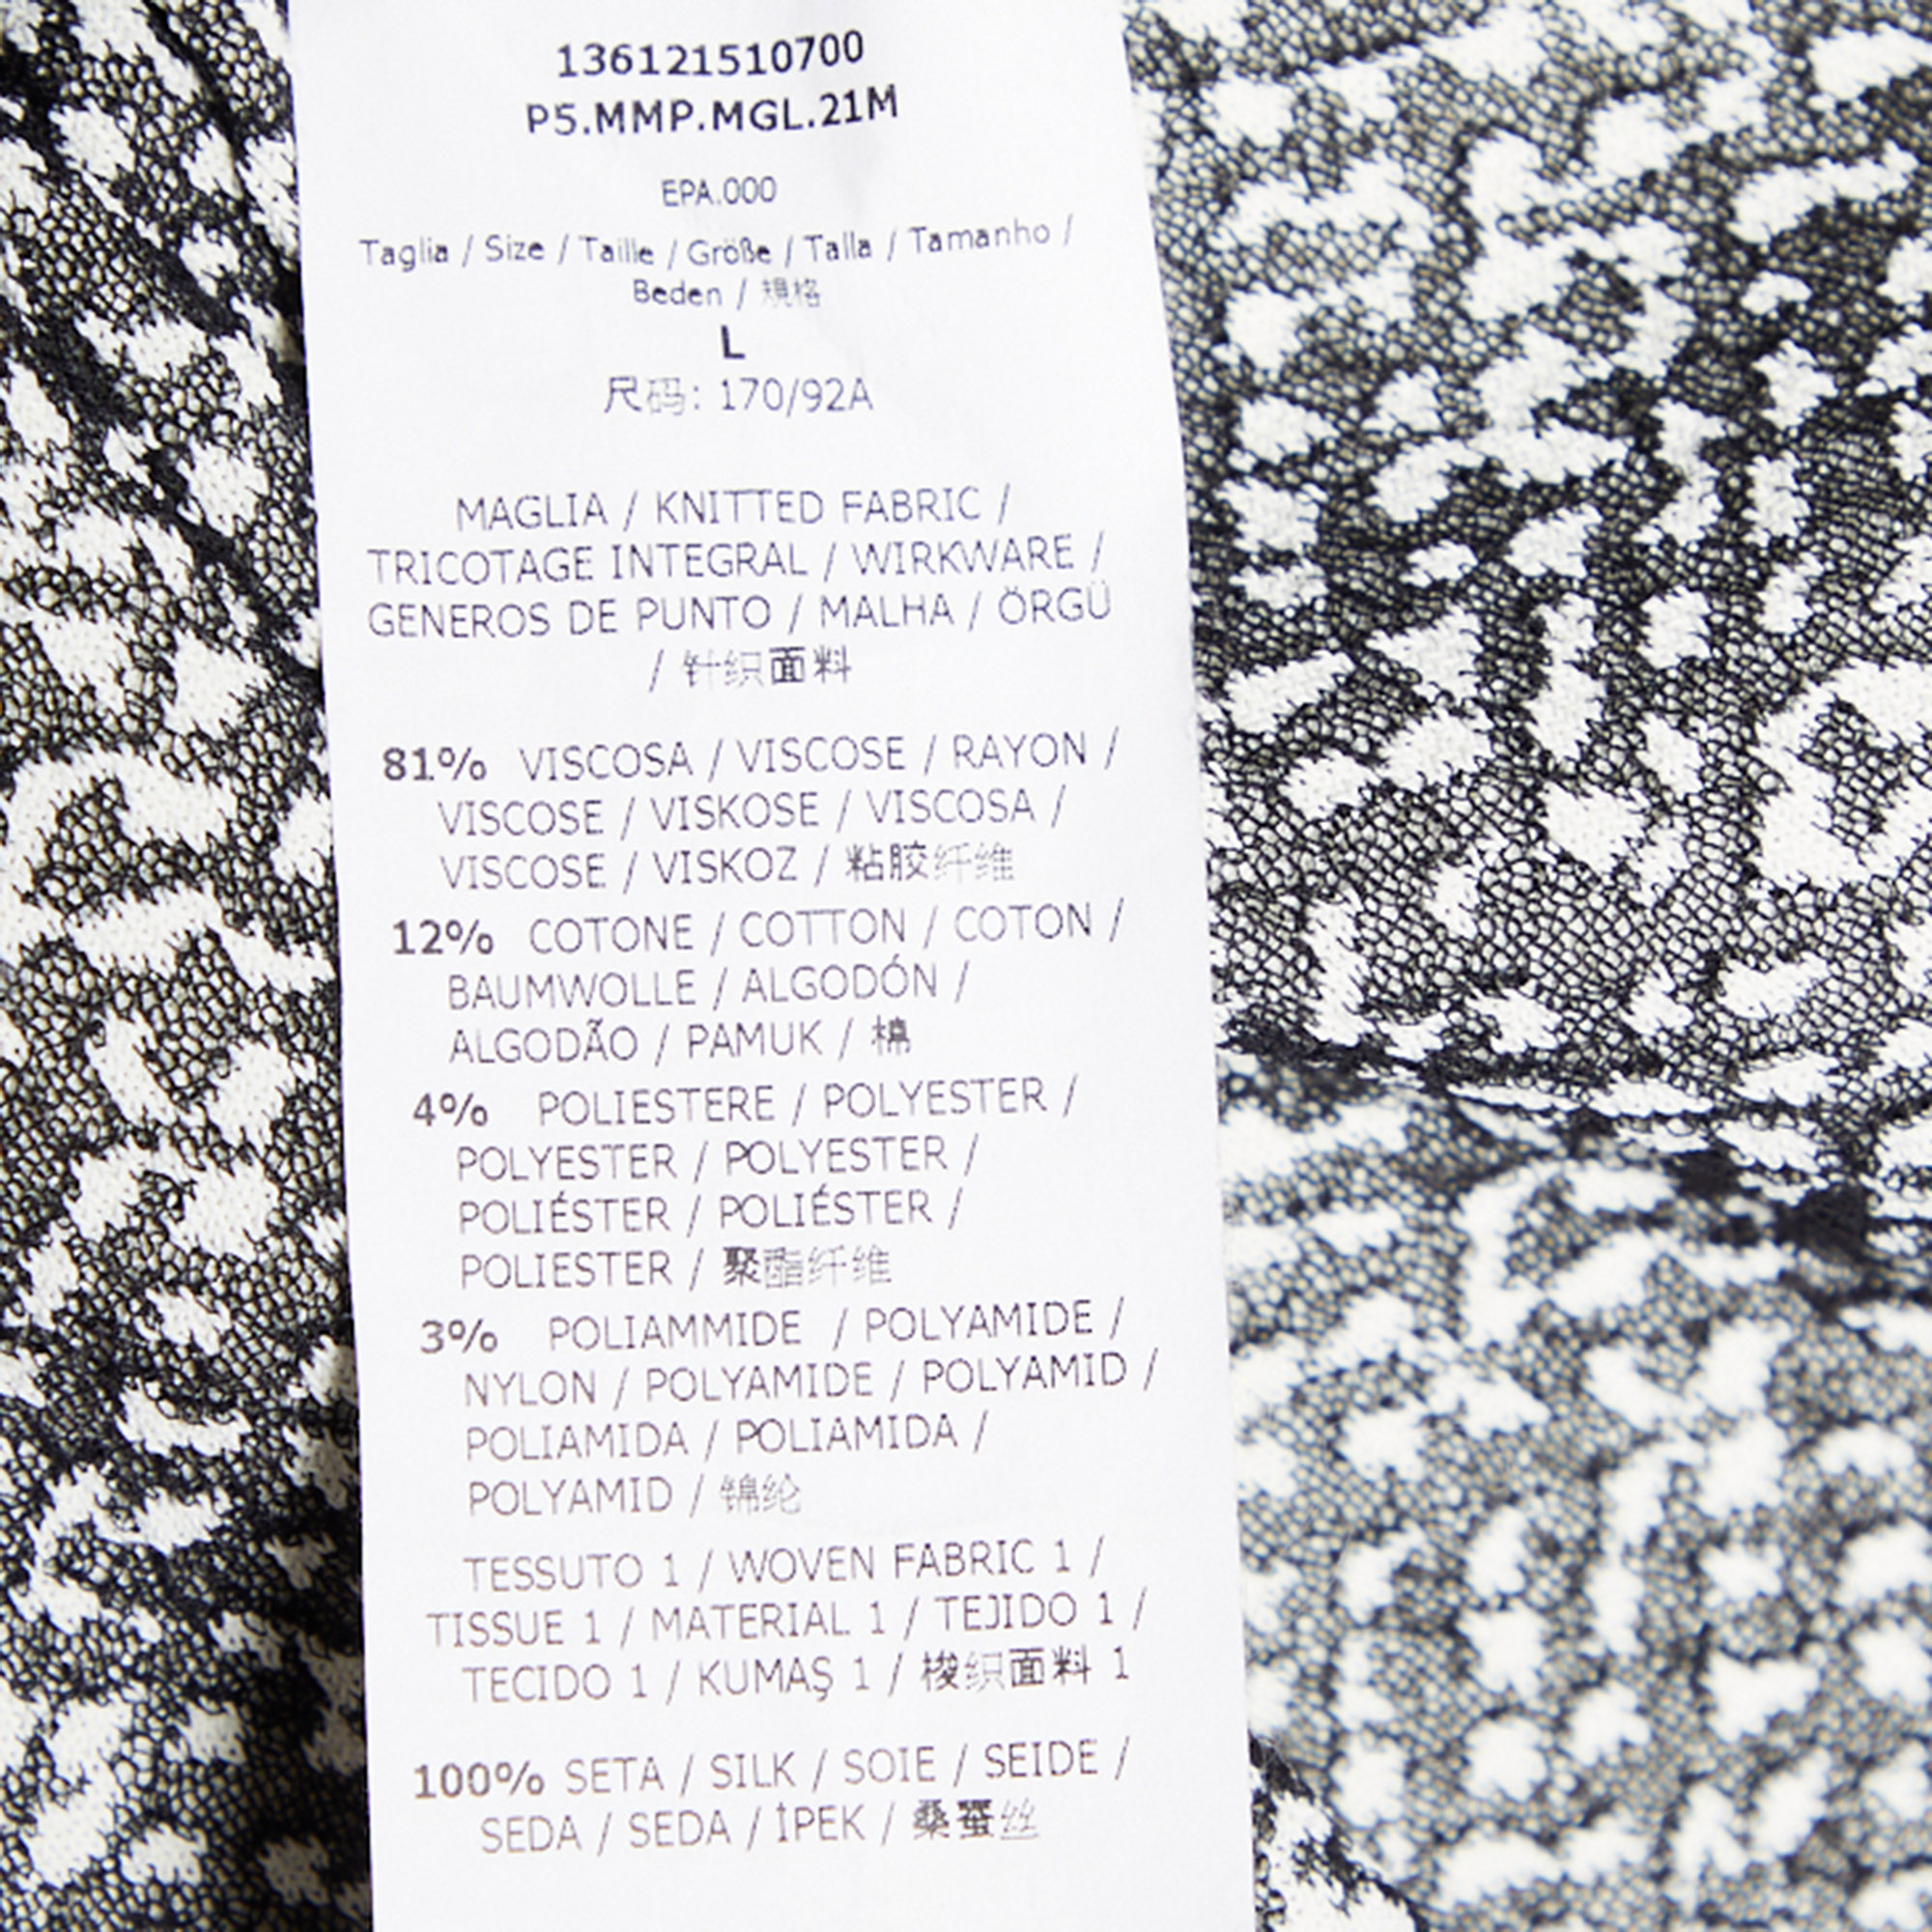 Max Mara Monochrome Knit & Silk Paneled Top & Cardigan Set L